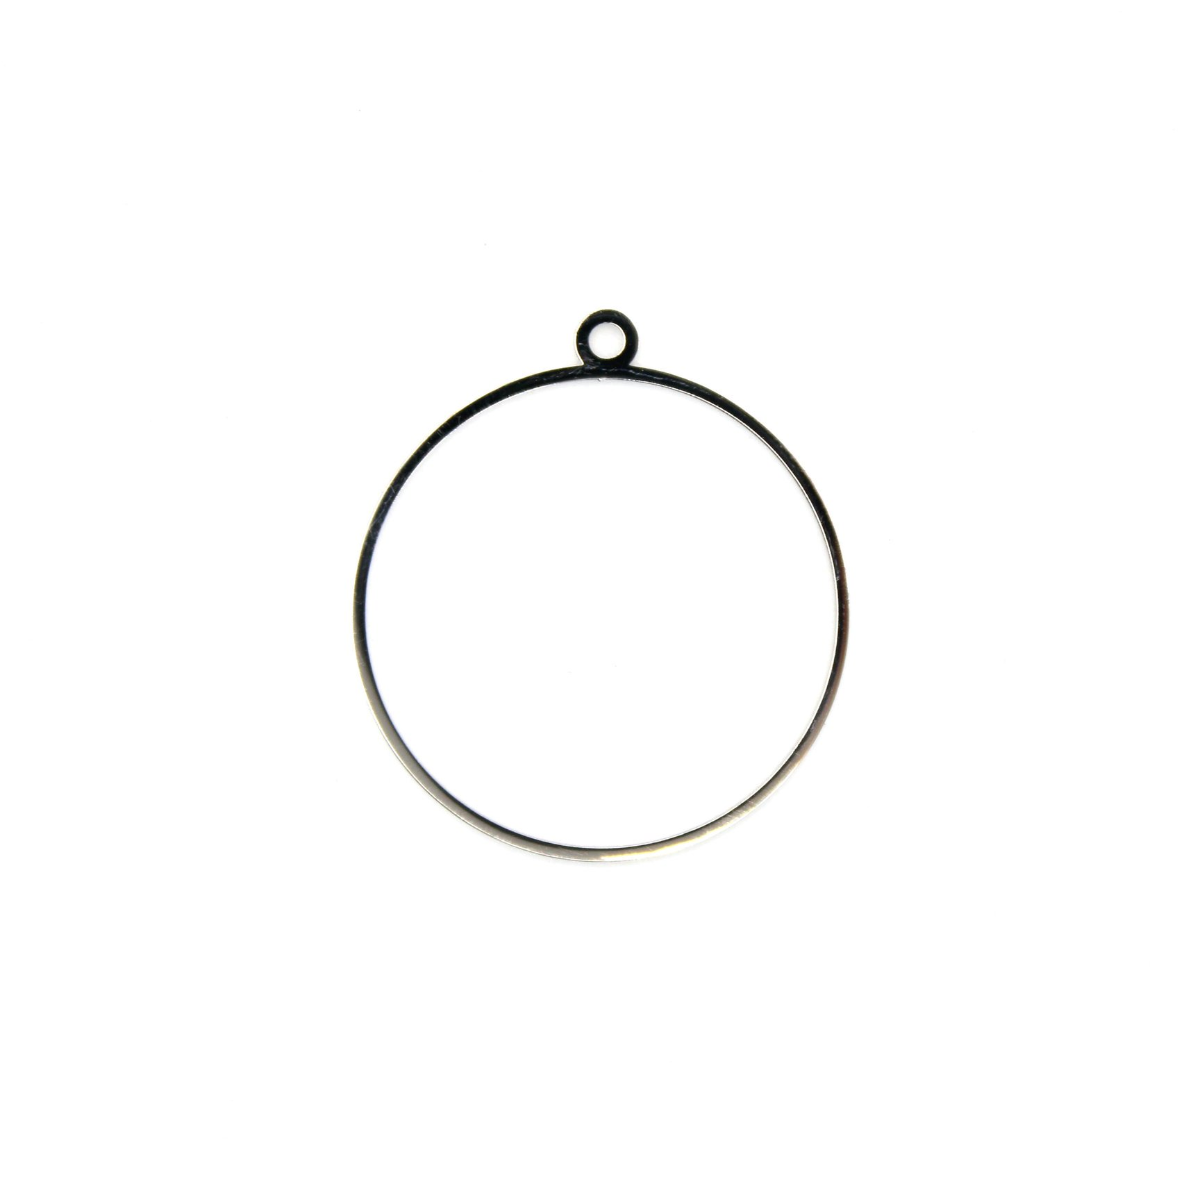 Céxe ouverte artisanale en acier inoxydable par conception pâteuse
 Forme-cercle